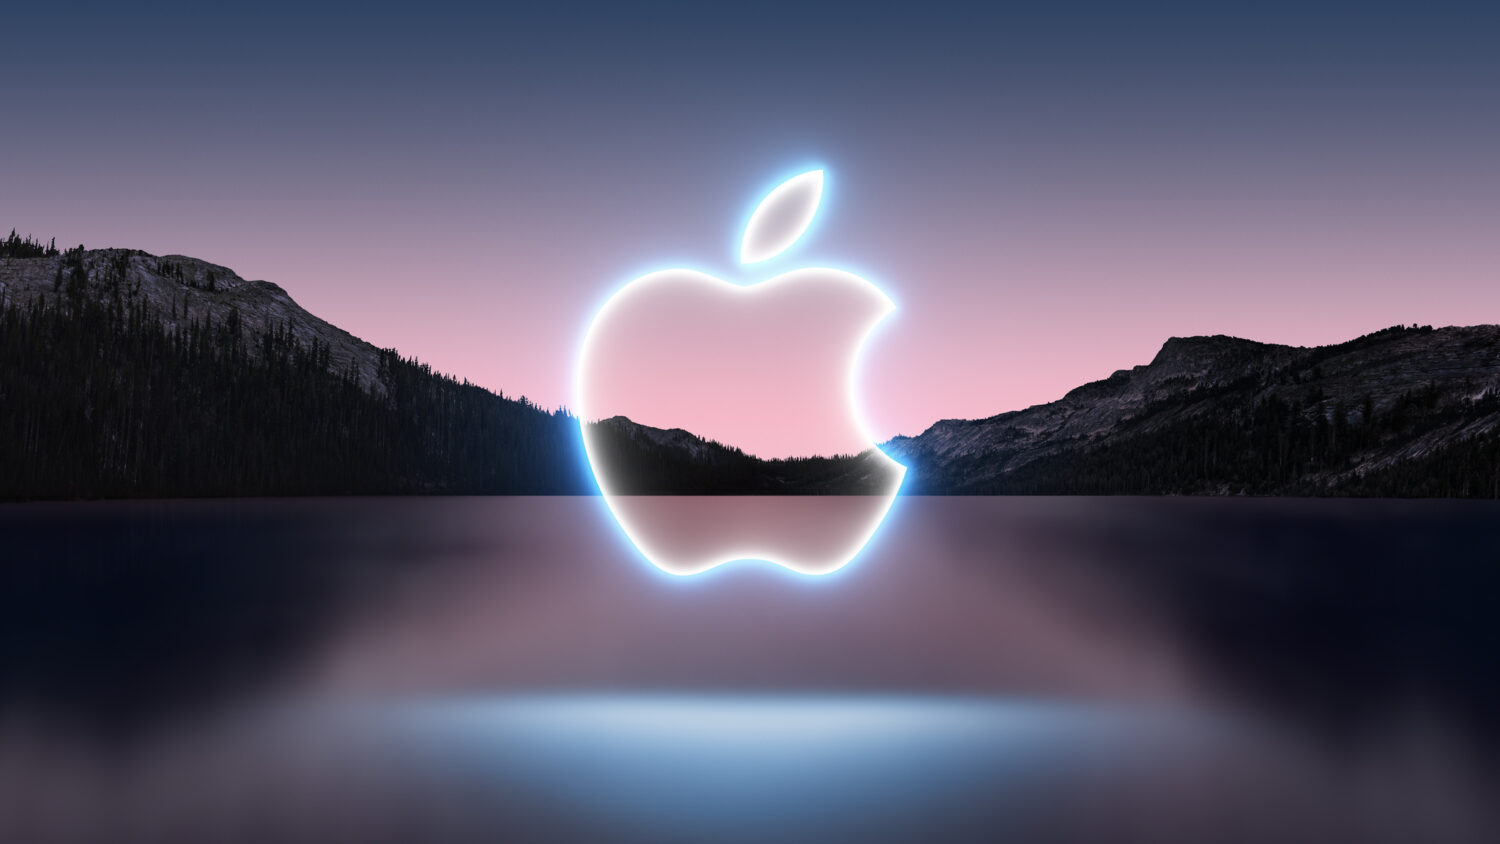 Apple: Πρώτη εταιρεία που πλησιάζει σε αξία τα 3 τρισ.